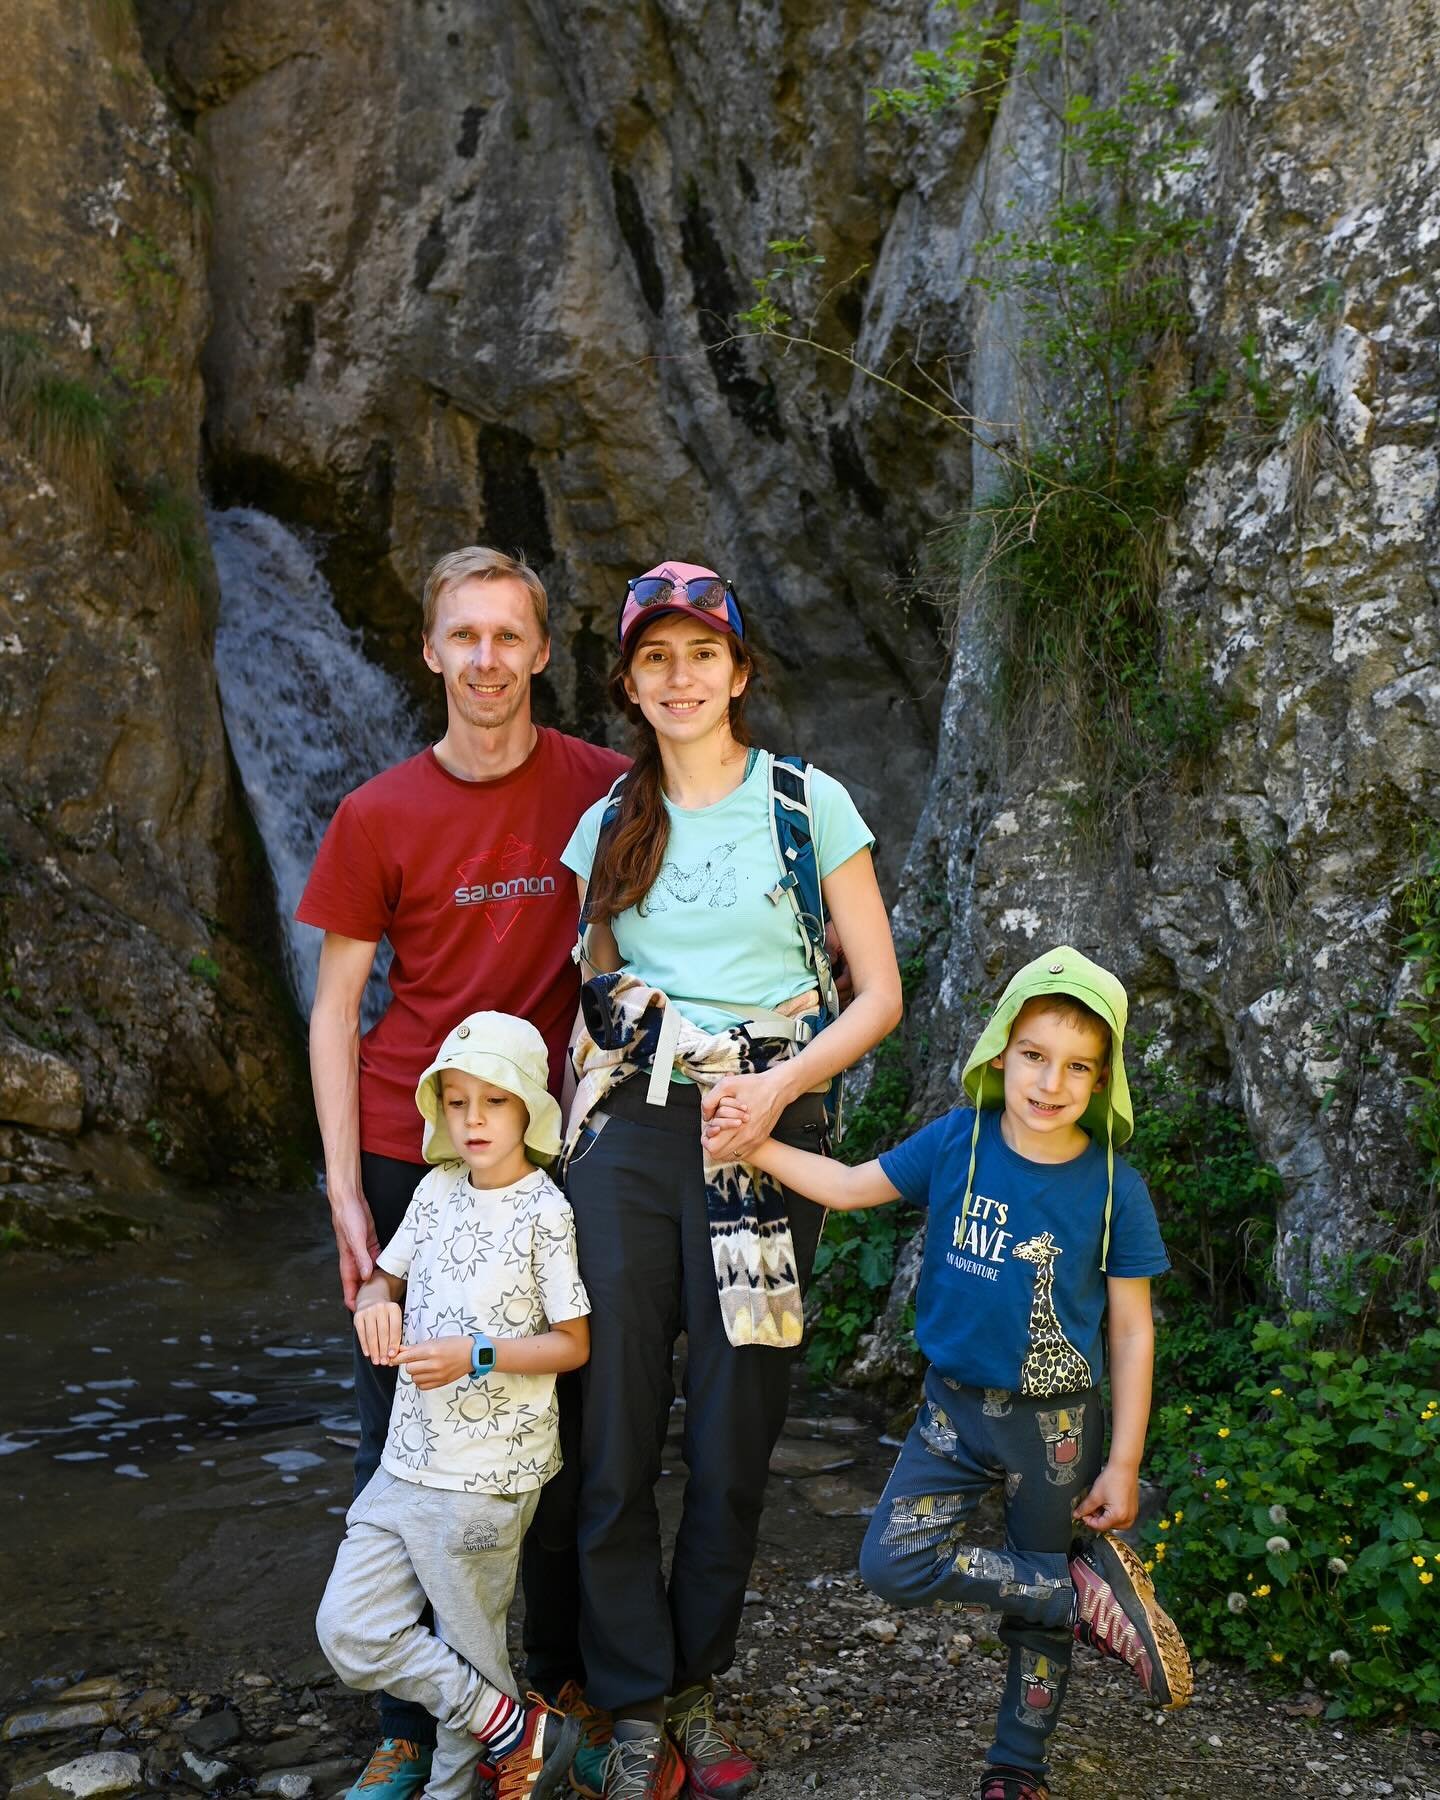 Una dintre putinele fotografii cu toti 4. Din plimbarea din weekend. 

#hikingfamily #outdoorfamily #letsgooutside #alwaysmoving #baileromanecetea